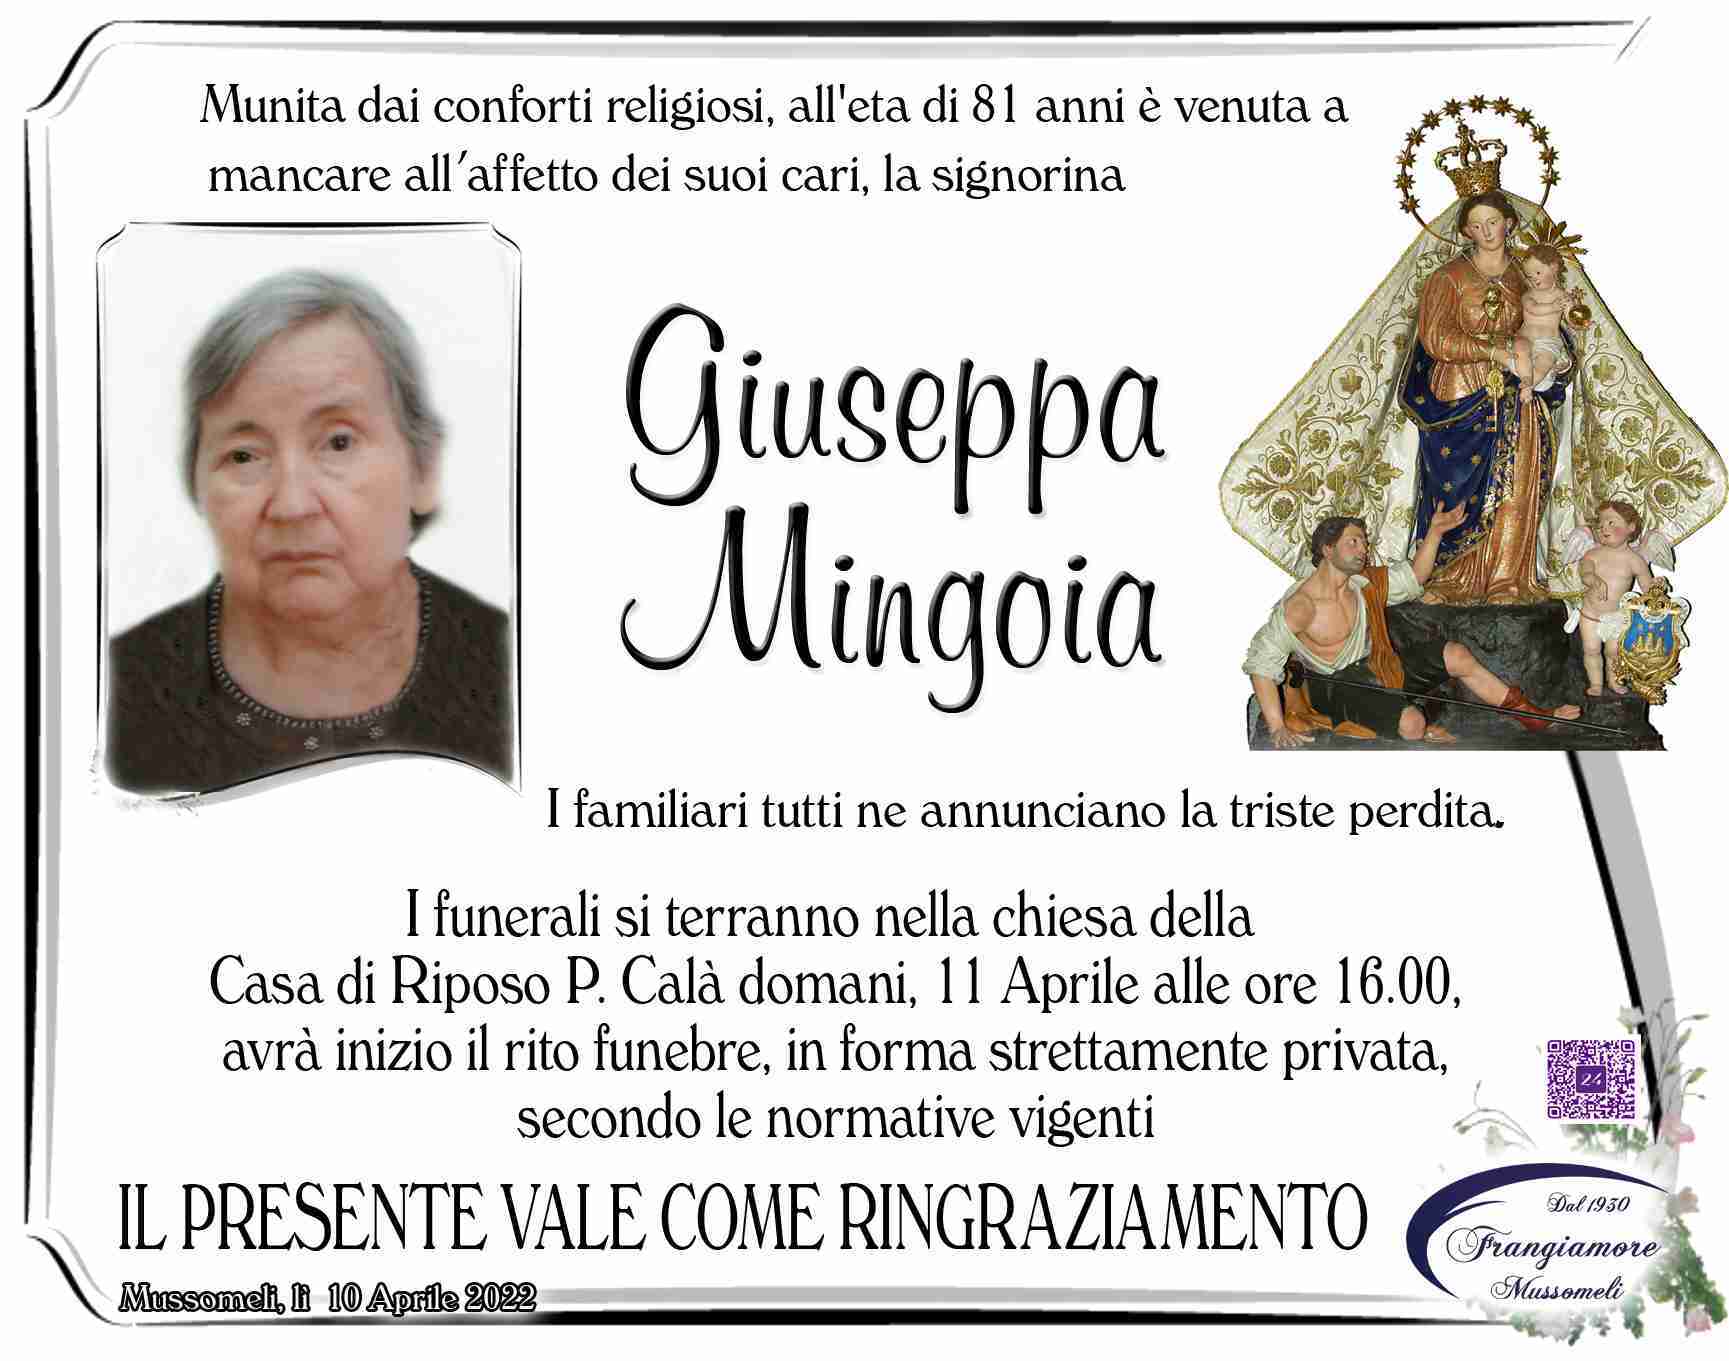 Giuseppa Mingoia